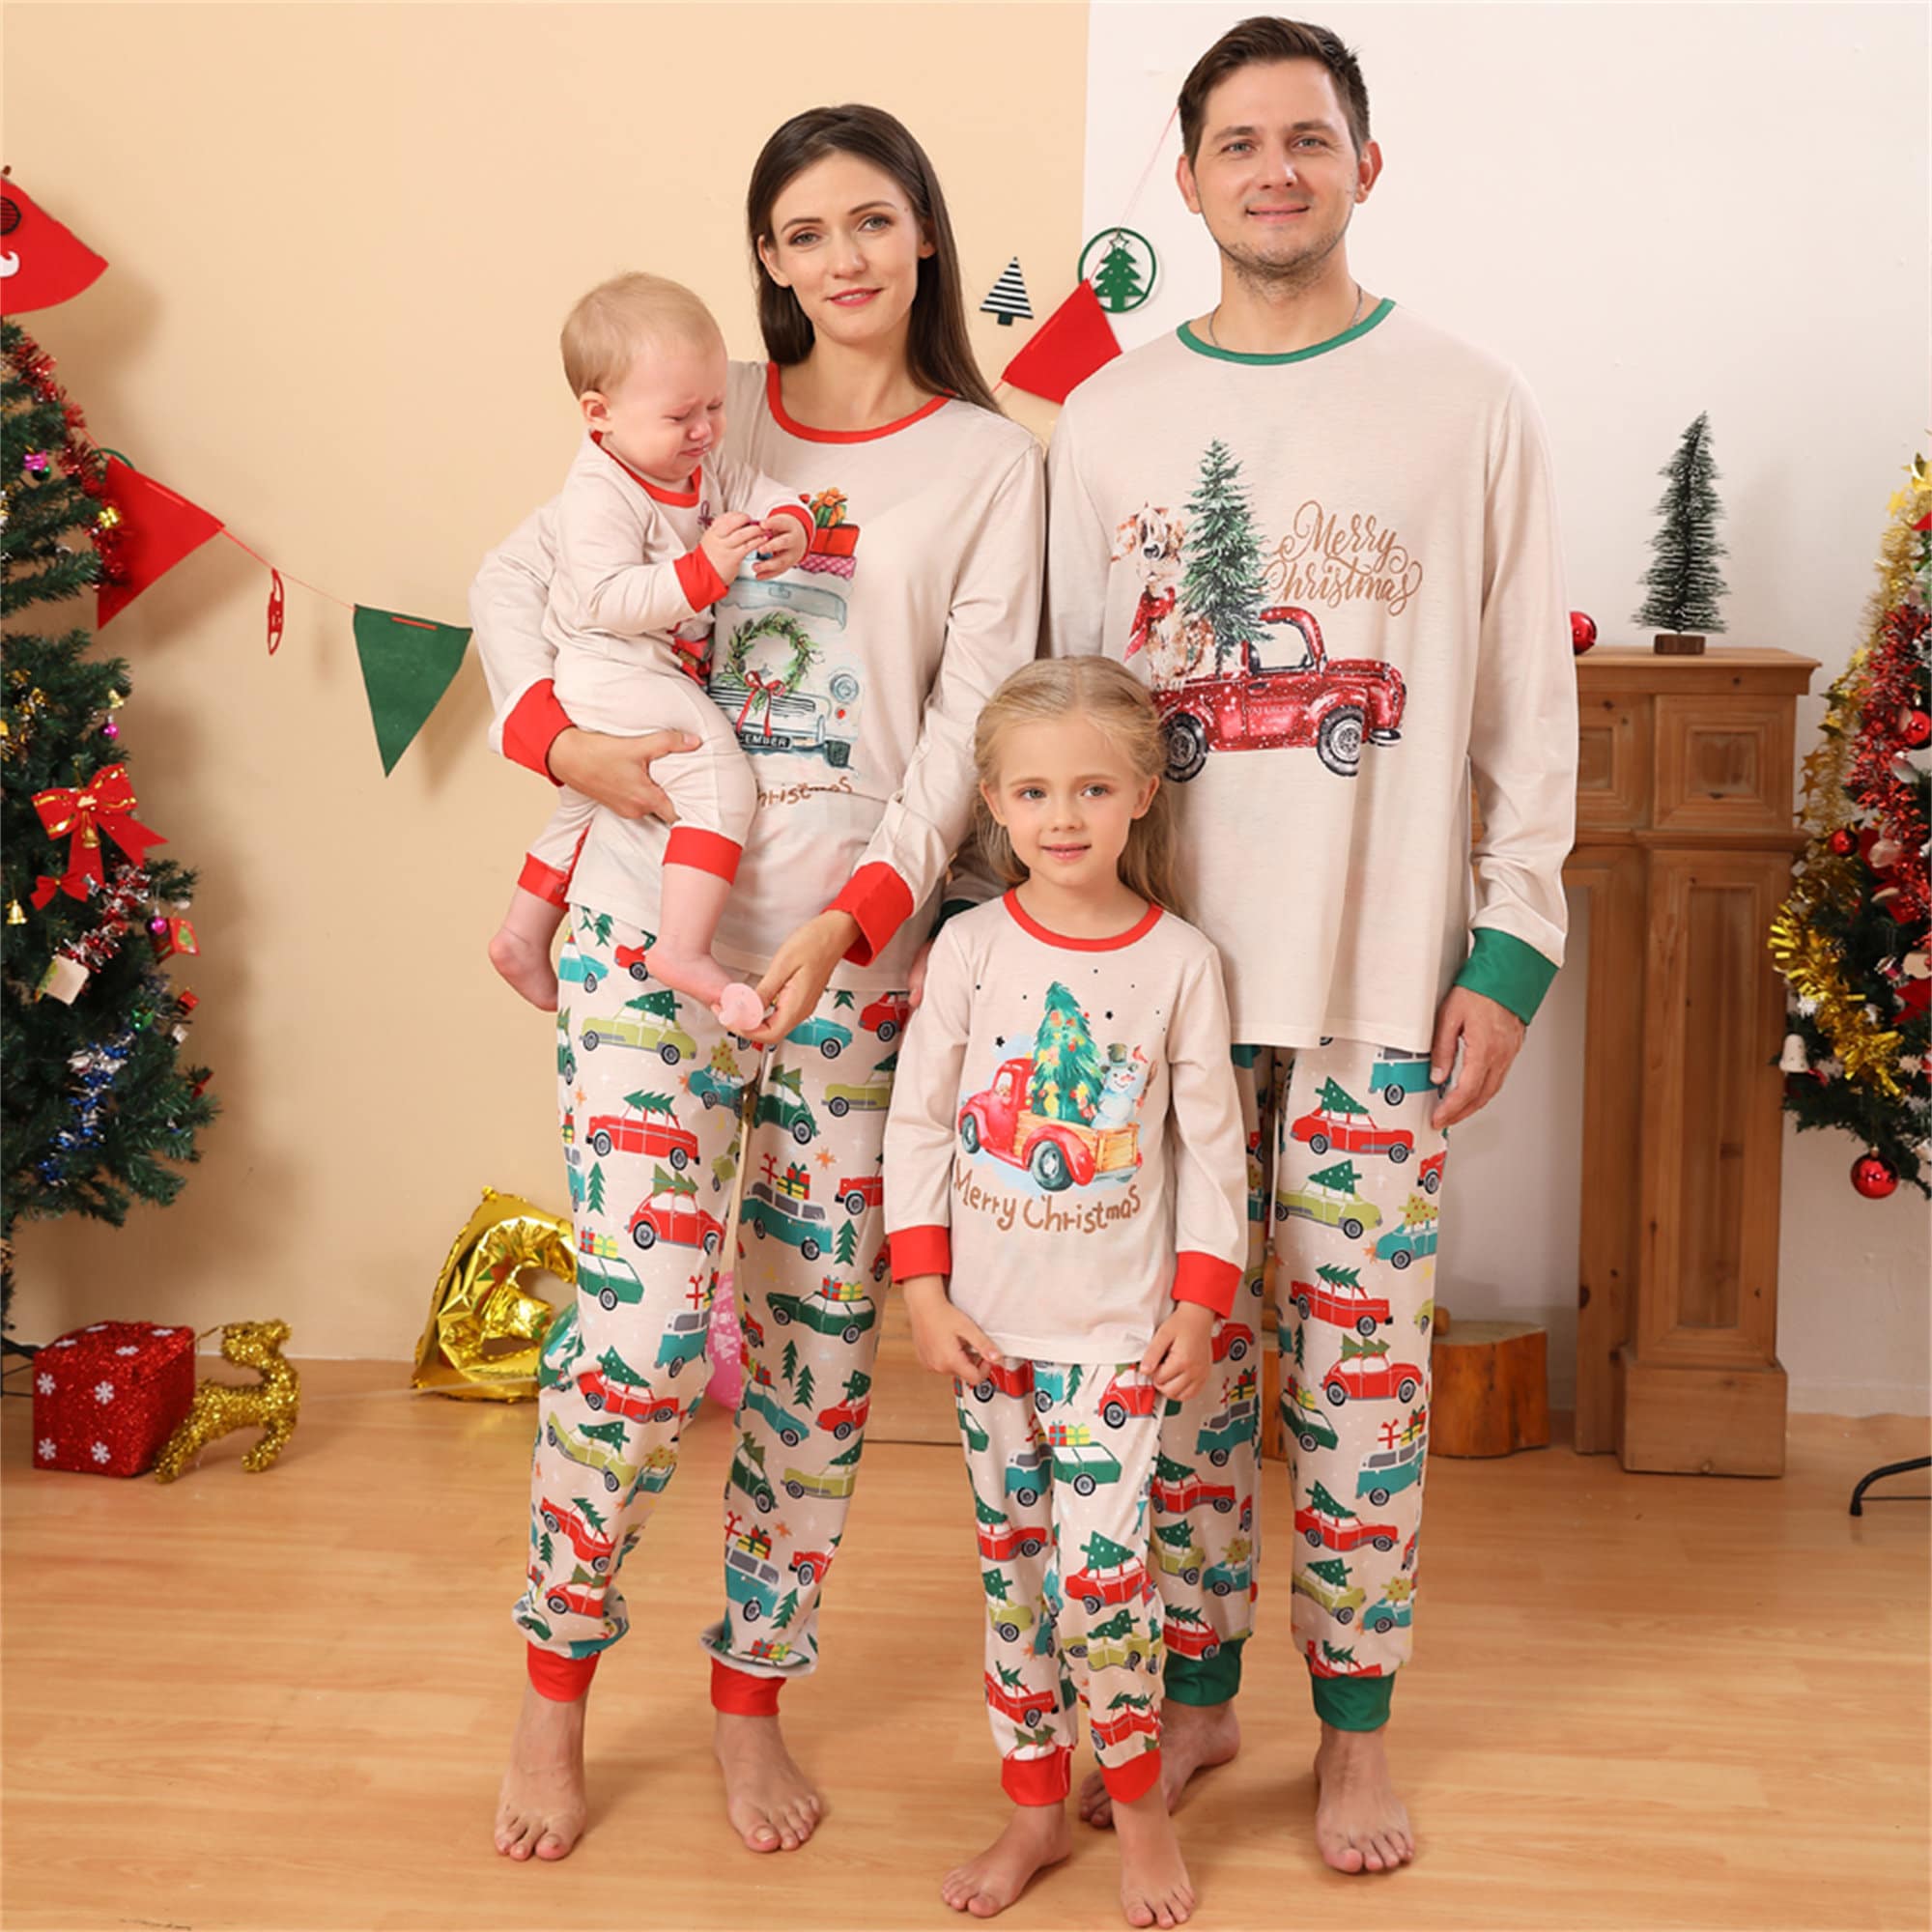 Xmas Holiday Gift Ropa Ropa unisex para niños Pijamas y batas Pijamas Family Clothes Christmas Family Jumpsuit Pajamas Snowman Christmas Family Pajamas Christmas Matching Family Outfits 